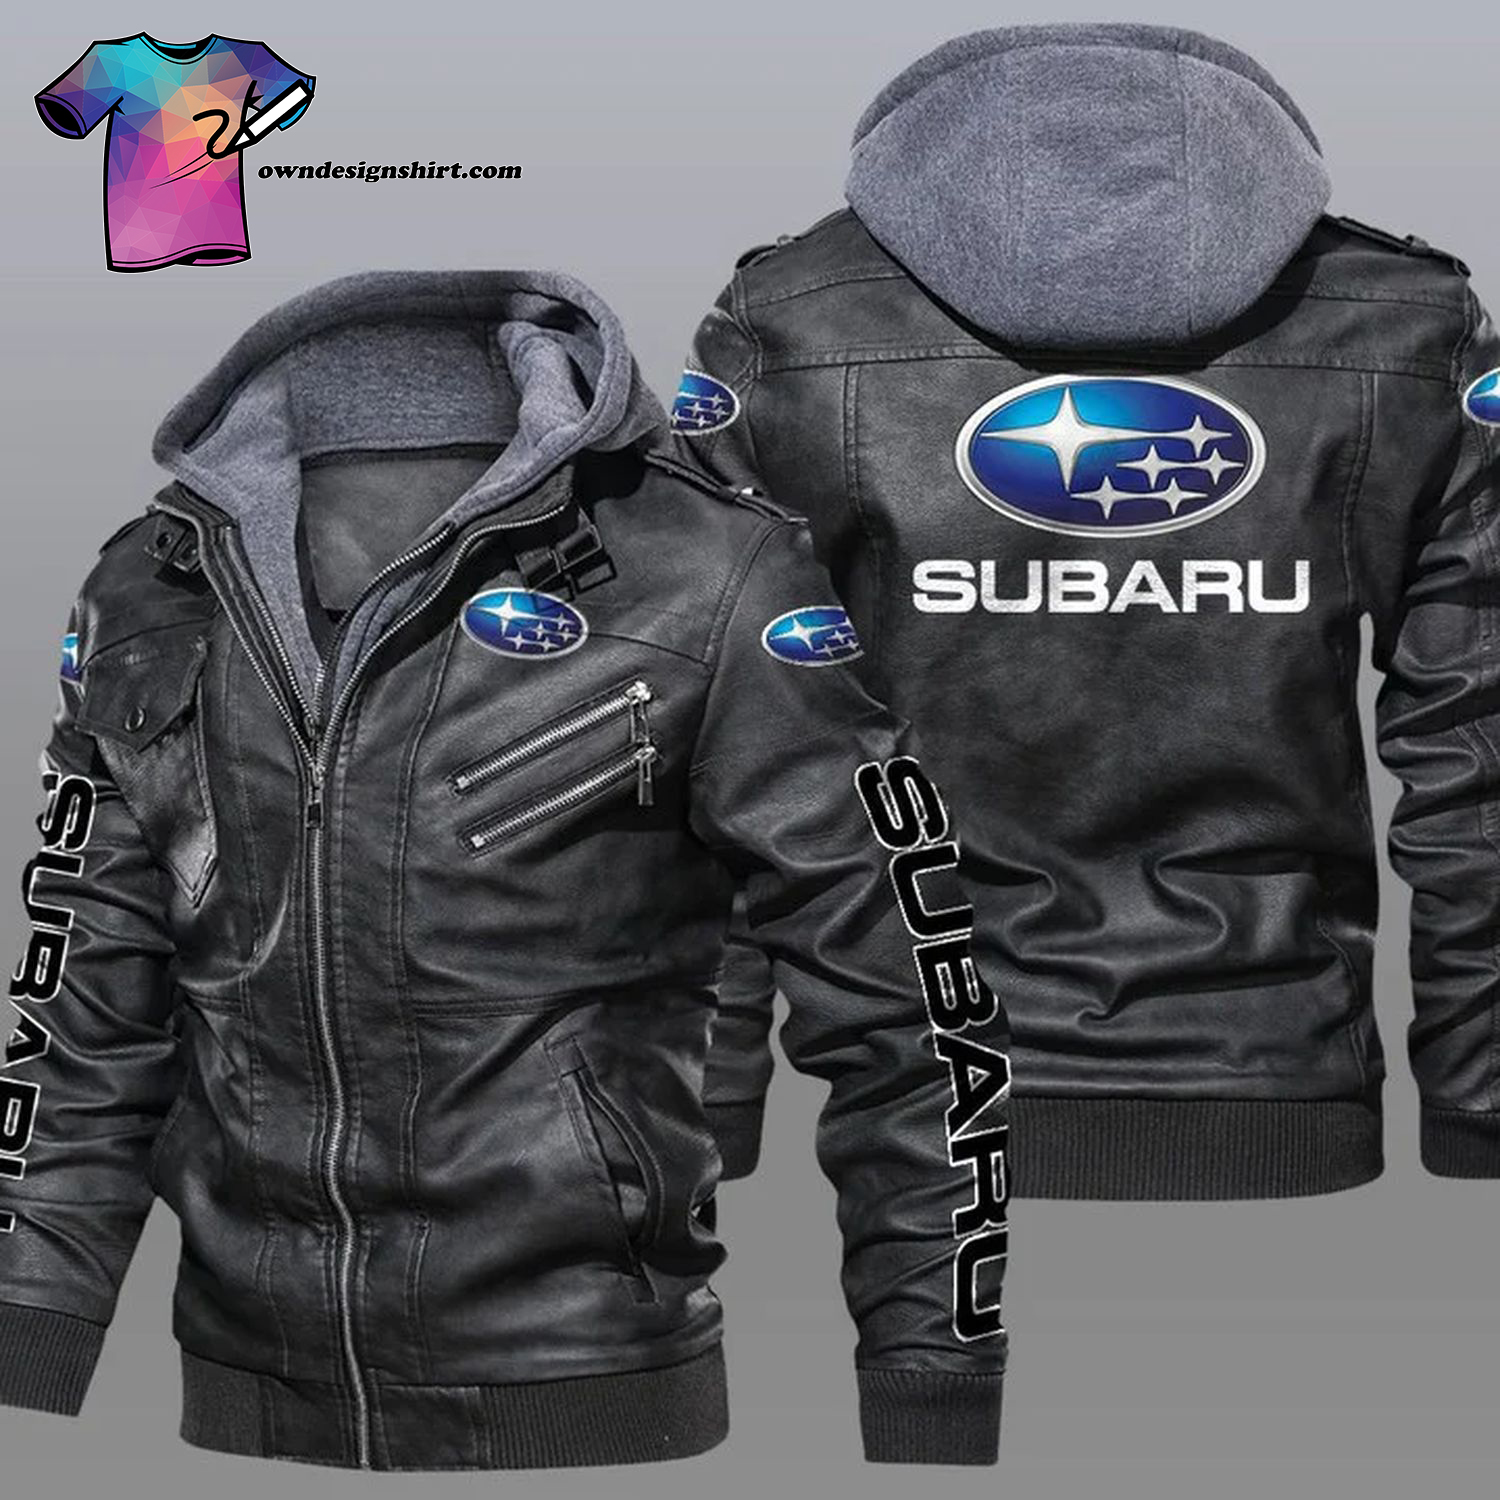 Subaru Car Symbol Leather Jacket